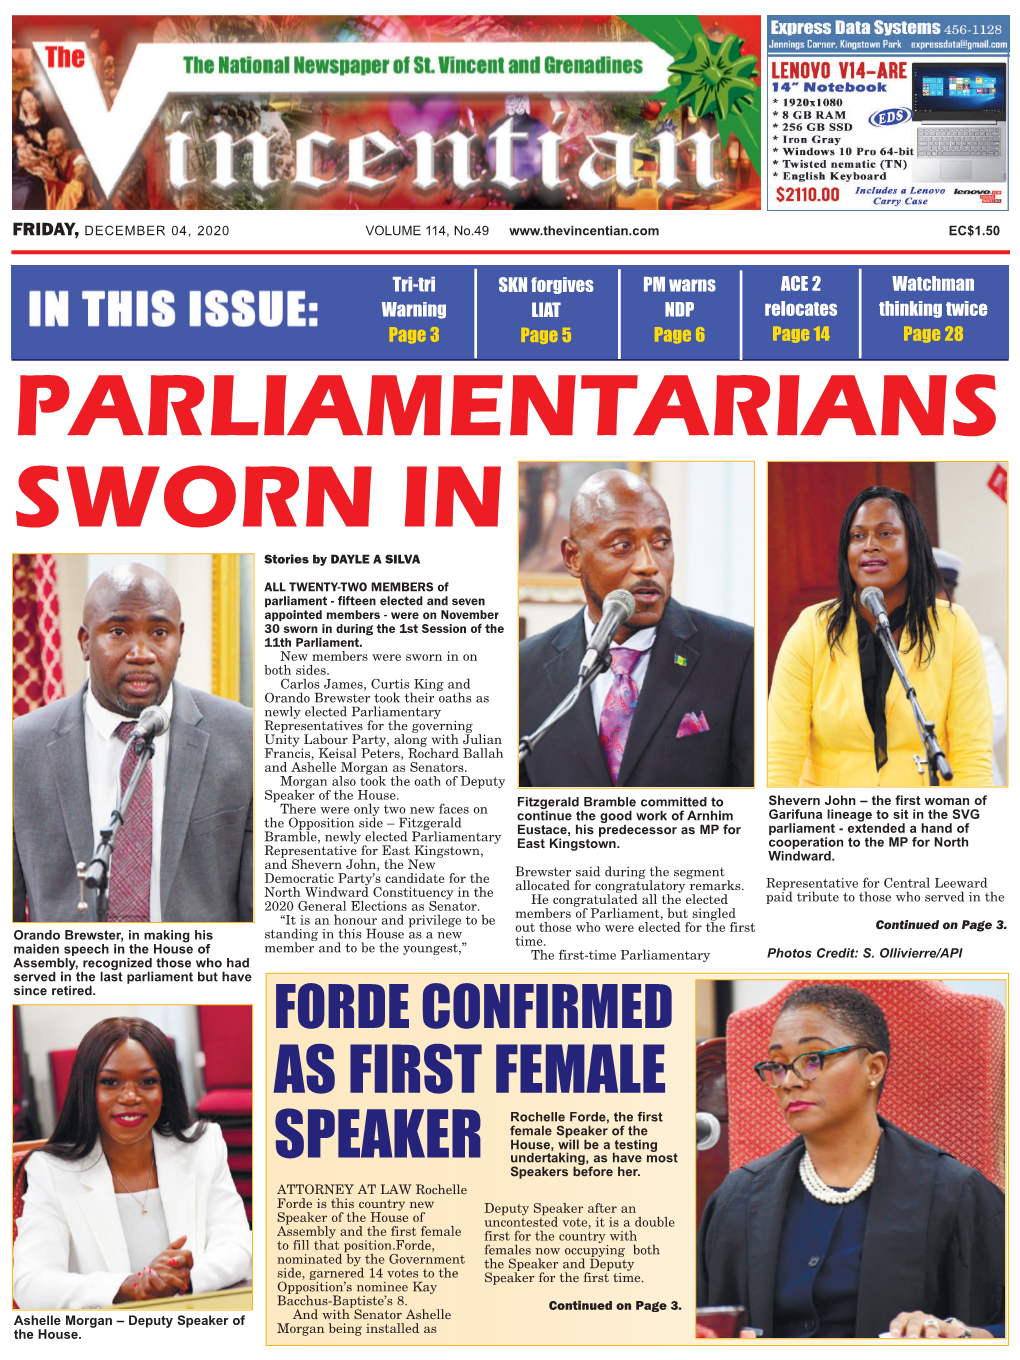 Parliamentarians Sworn In